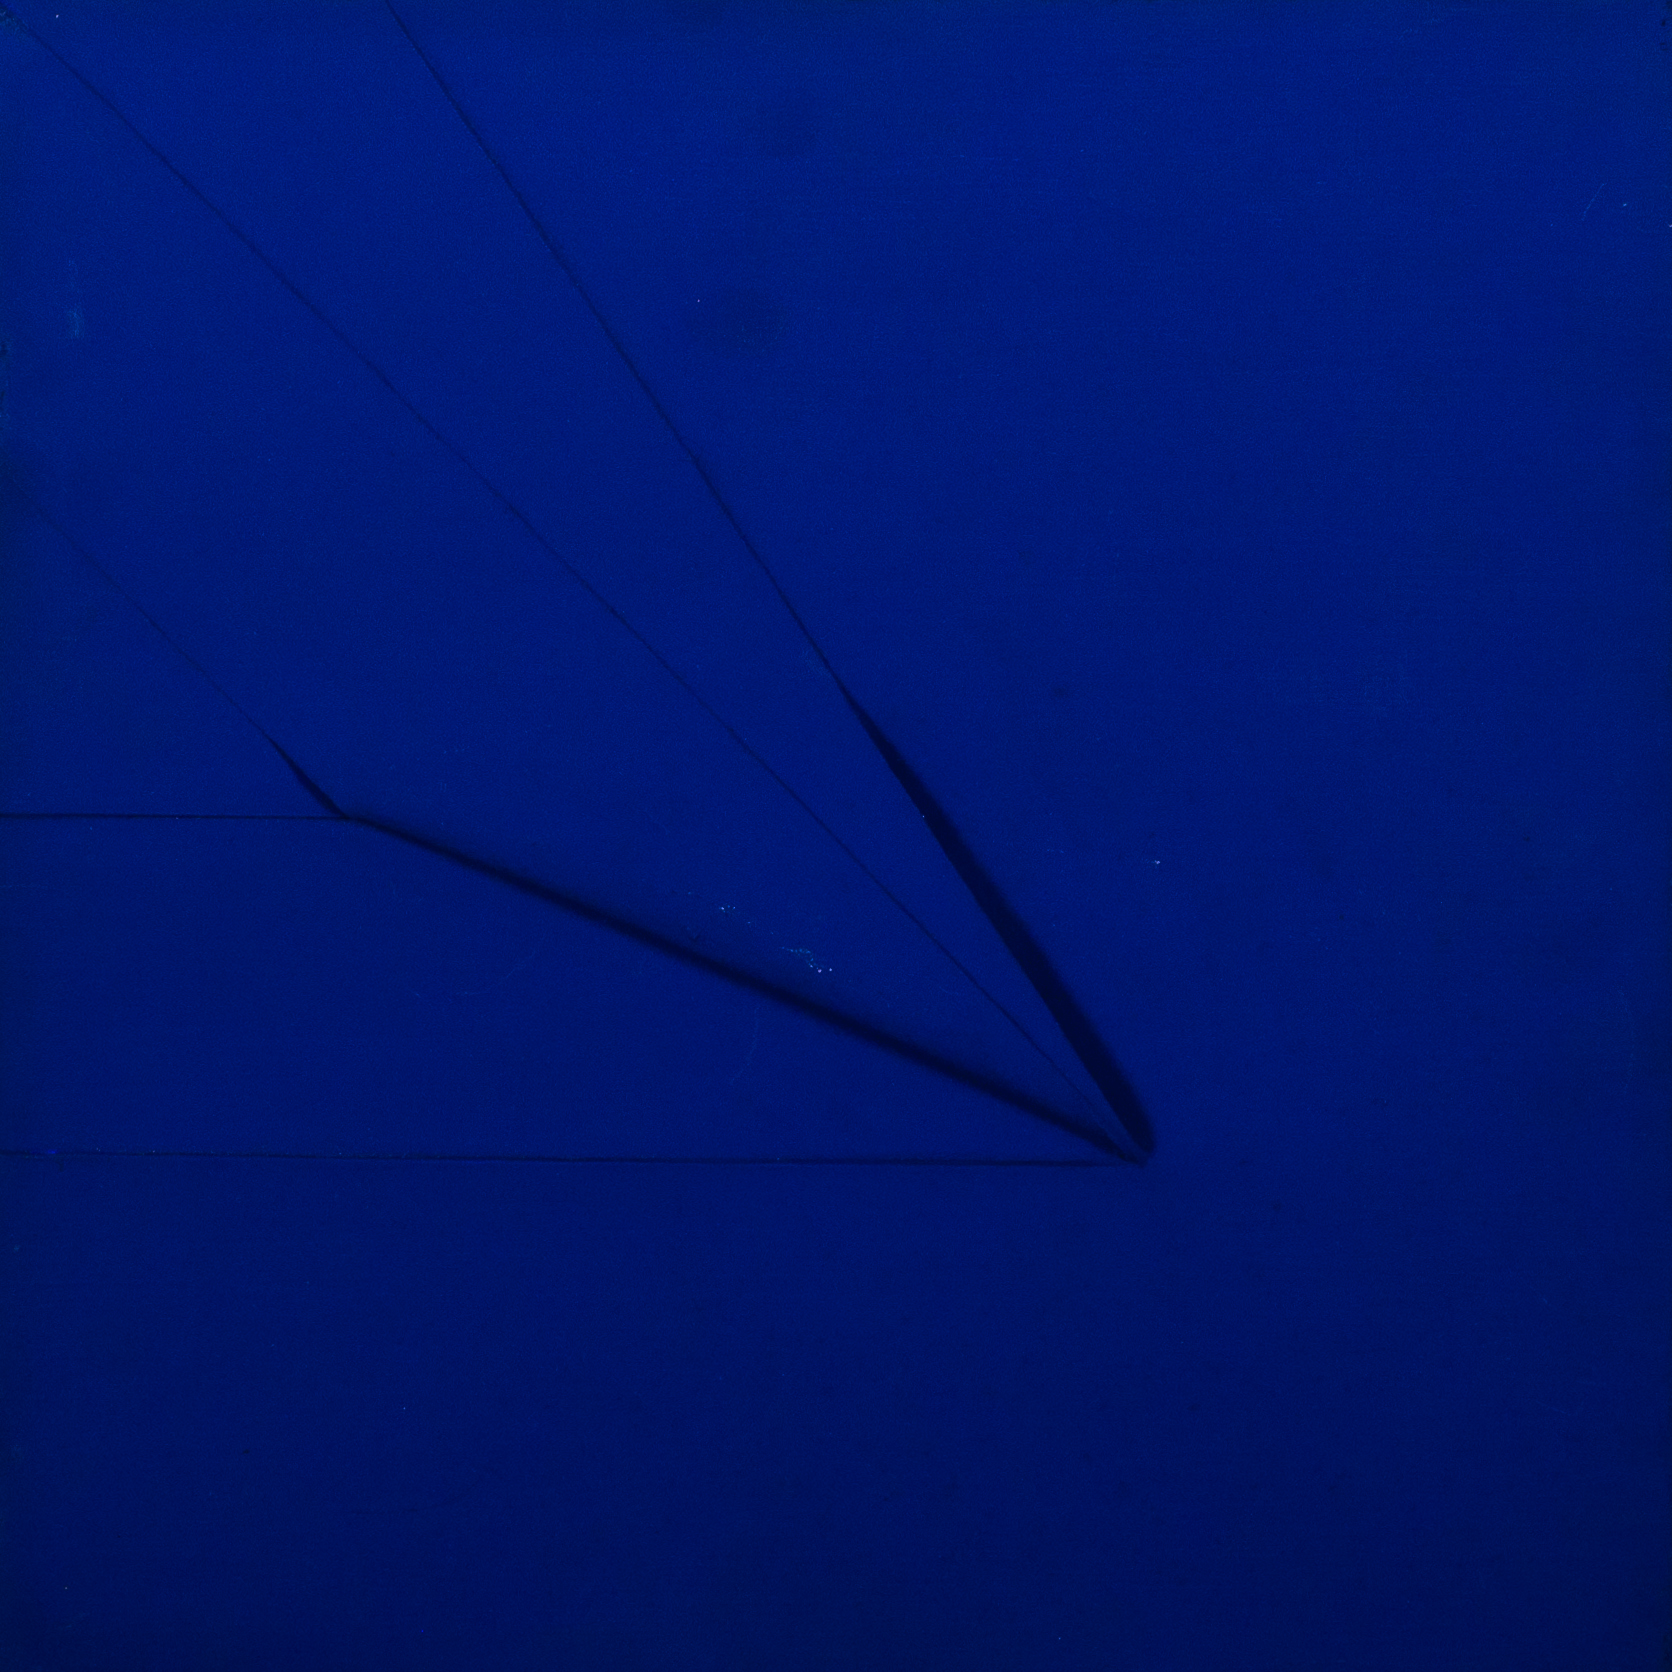 Vincentiu Grigorescu - Senza Titolo 2, 70s, acrylic on canvas, 30 x 30 cm